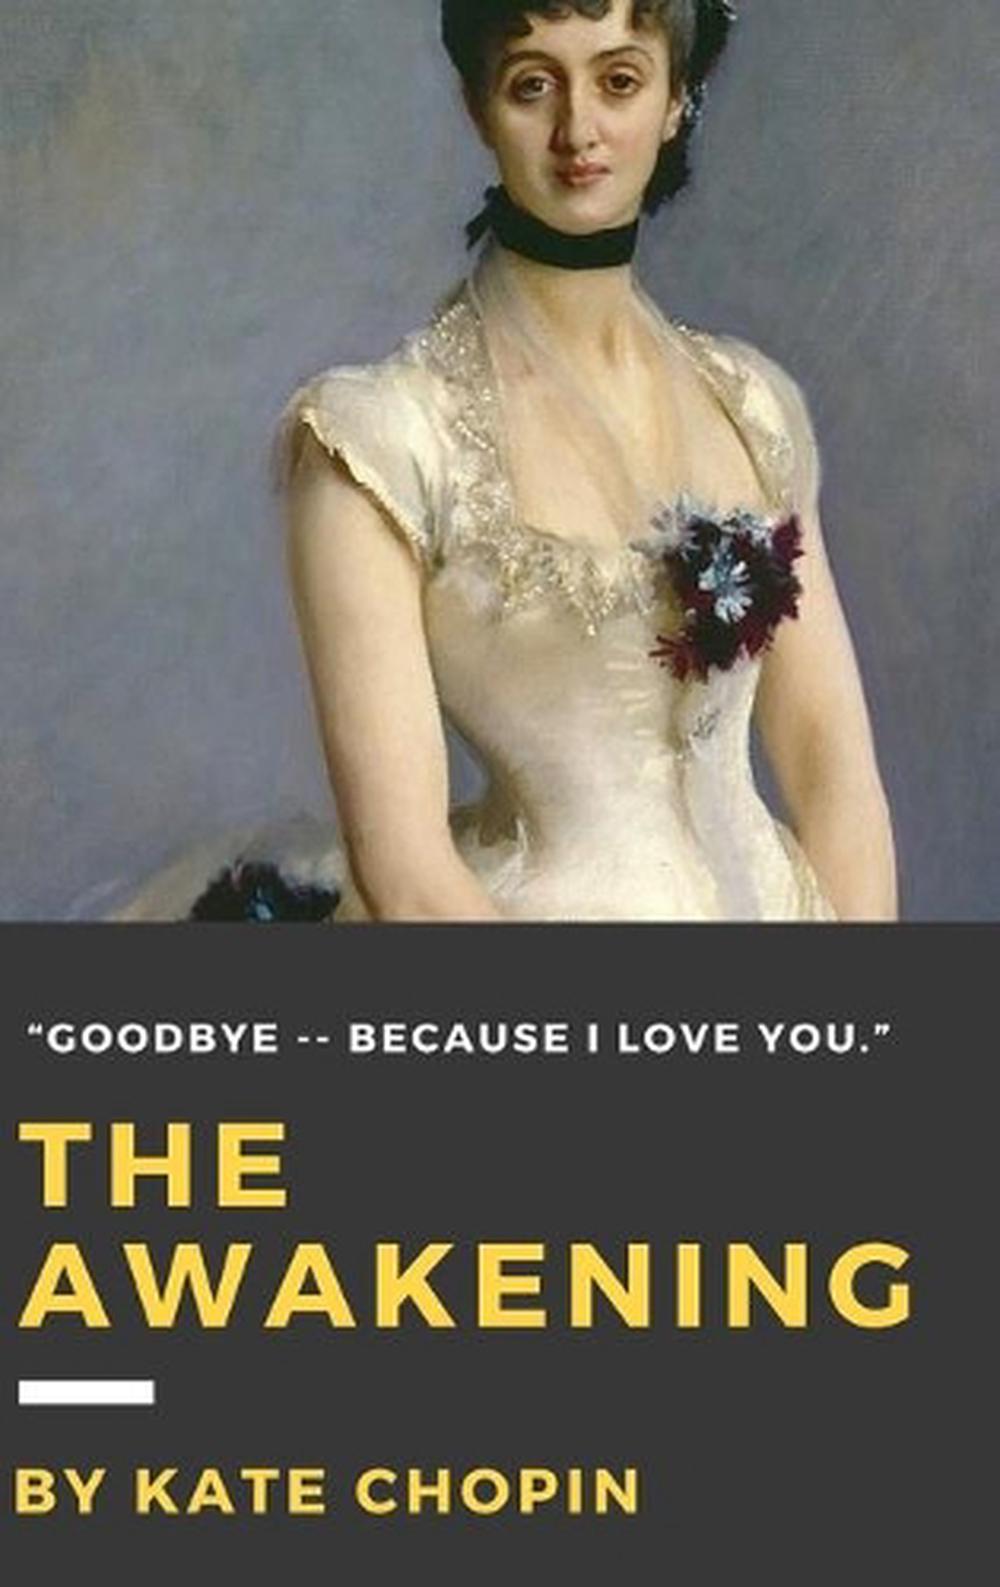 the awakening by kate chopin 1899